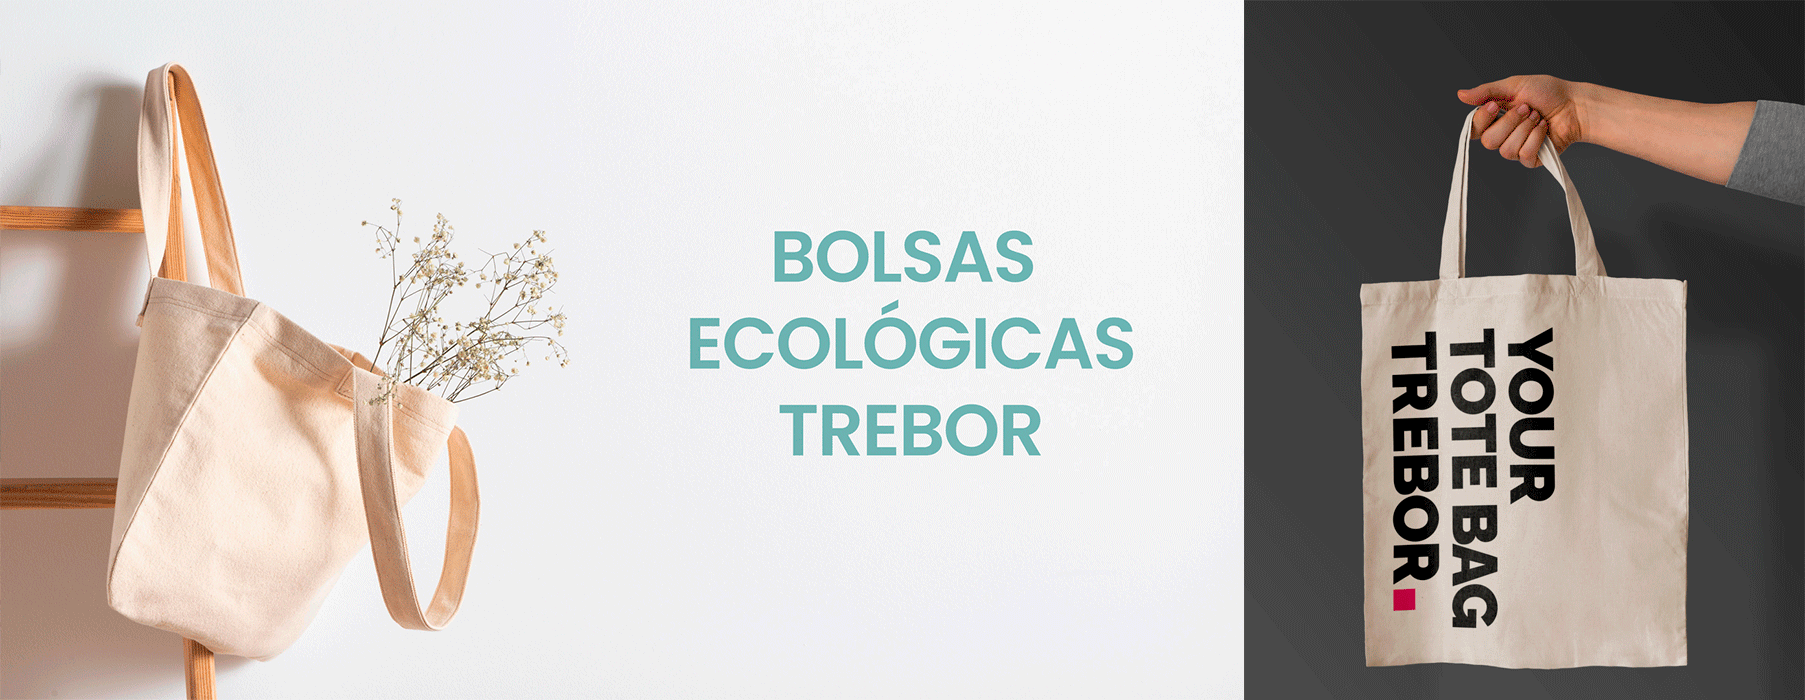 Distribución suave Plisado Bolsas ecológicas de Trebor - Trebor